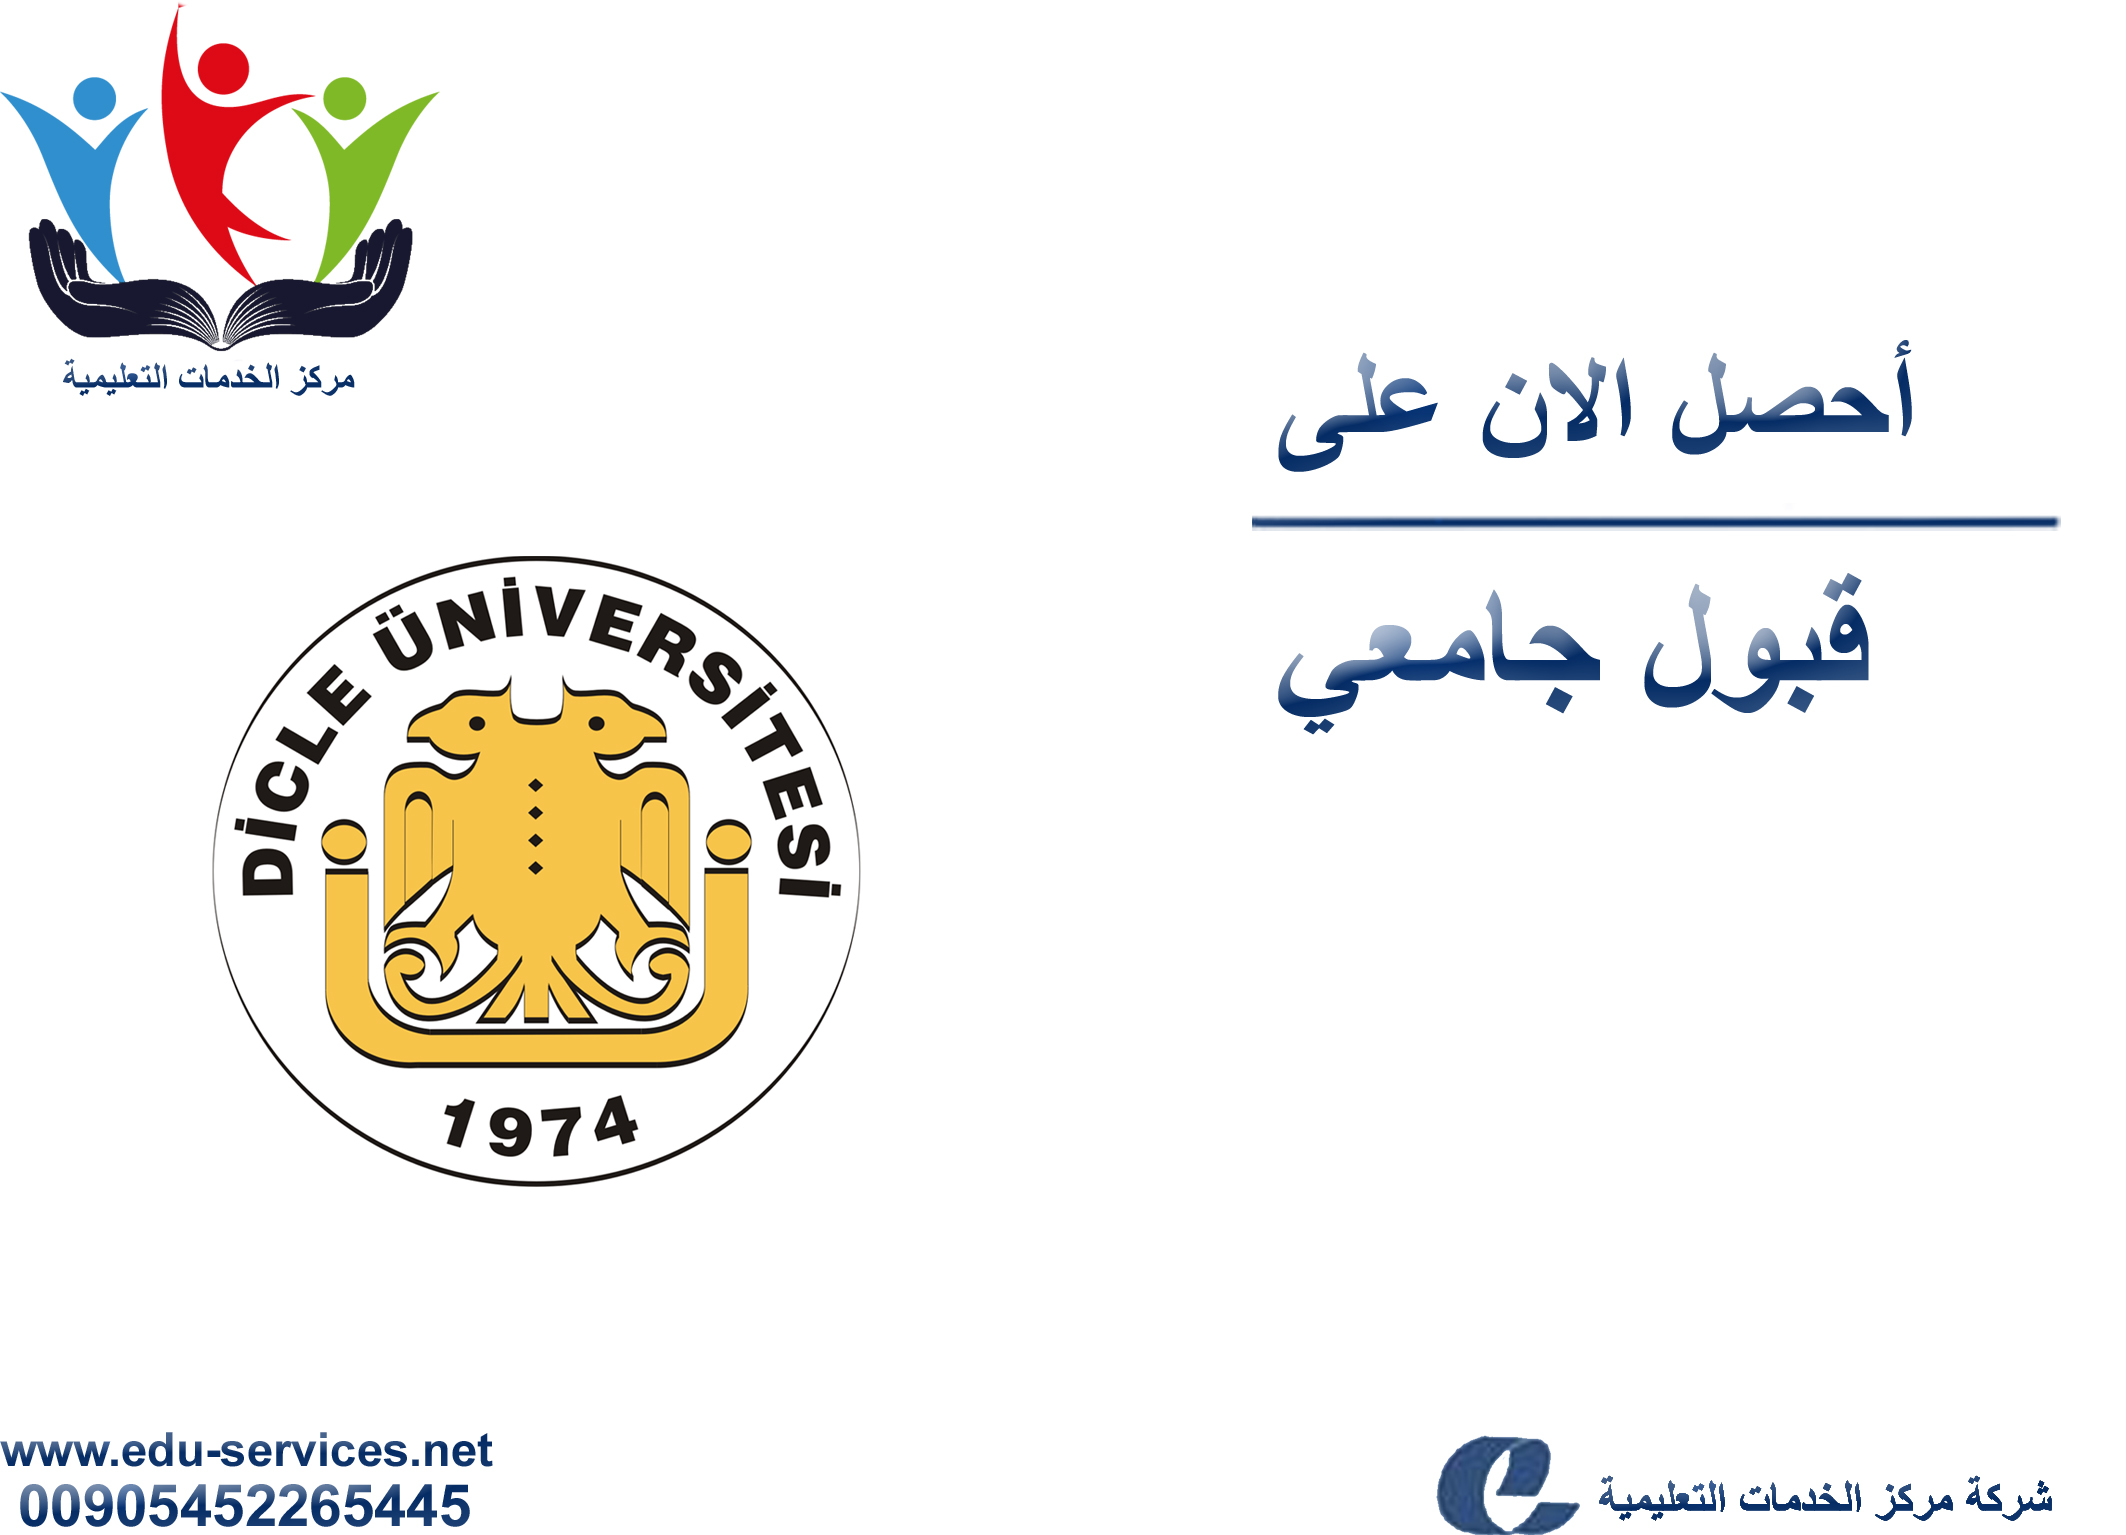 أعلنت جامعة دجلة افتتاح التسجيل للطلاب الأجانب لدرجة الماجستير والدكتوراة للعام 2018